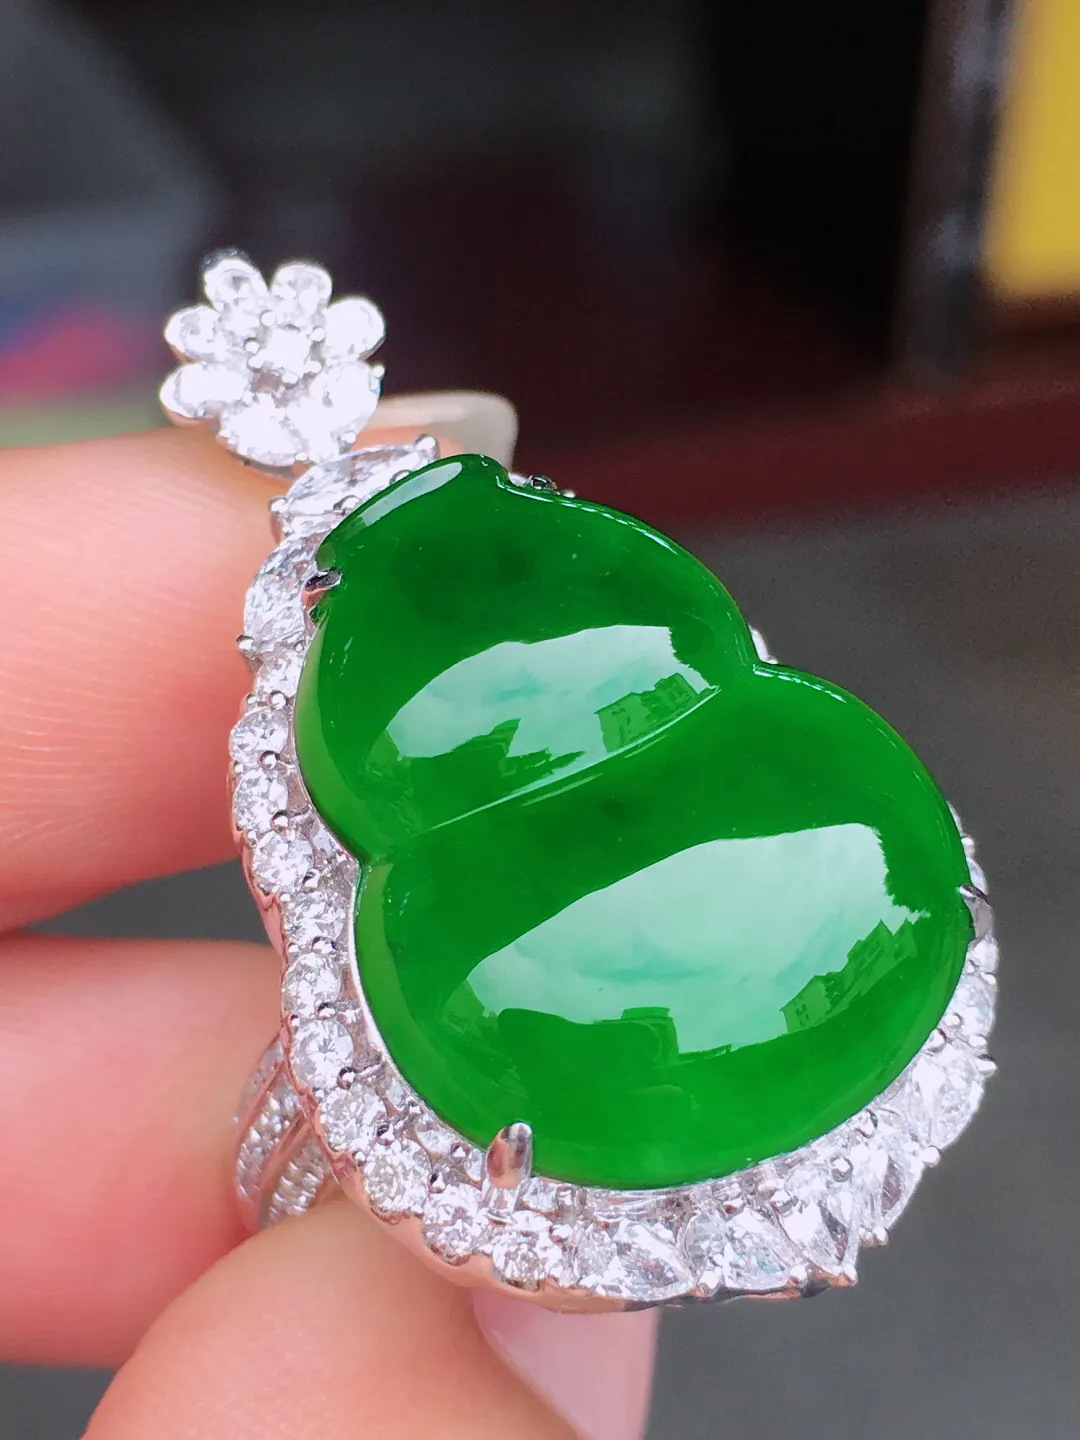 超好看的一枚绿大葫芦戒指/吊坠两用款，种水细腻莹润，
光感十足，器型很饱满，优
雅迷人～18k金豪华镶嵌